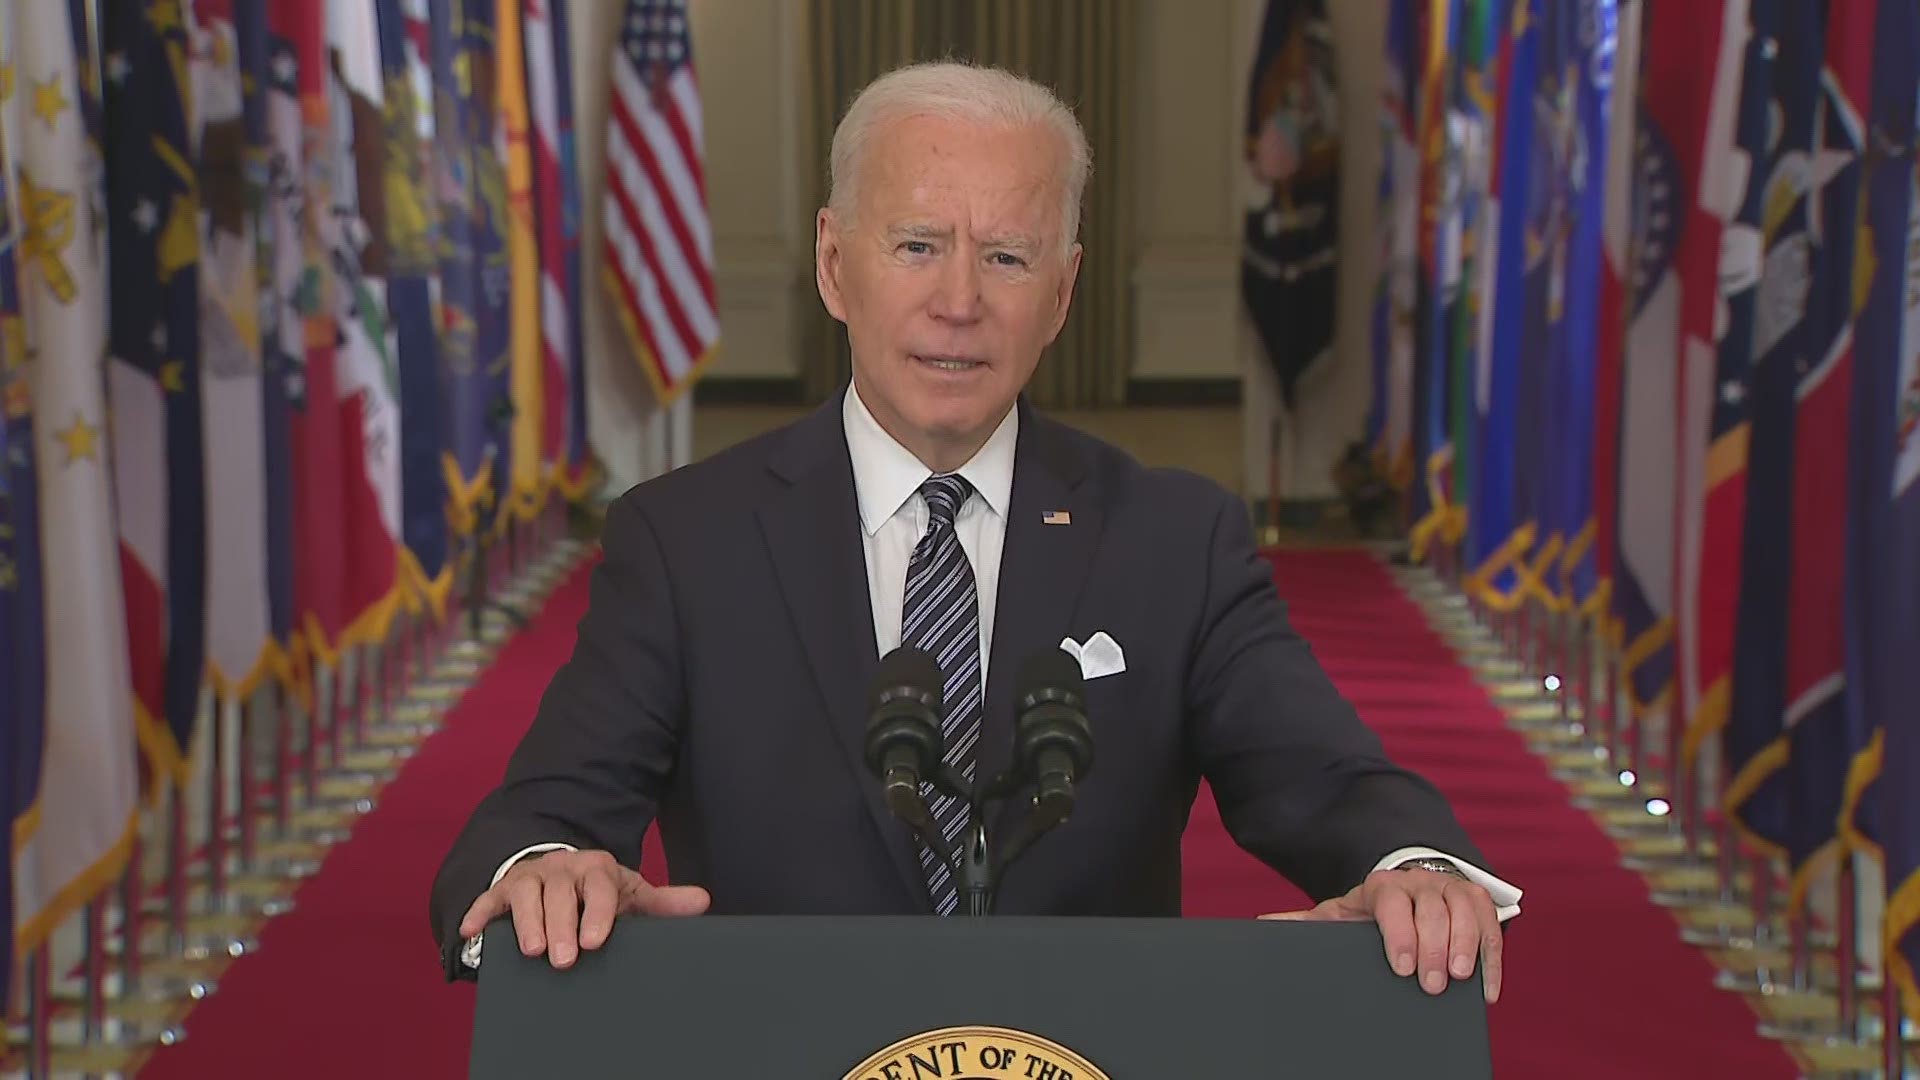 President Joe Biden gave his first primetime address, focusing on America's battle against COVID-19.